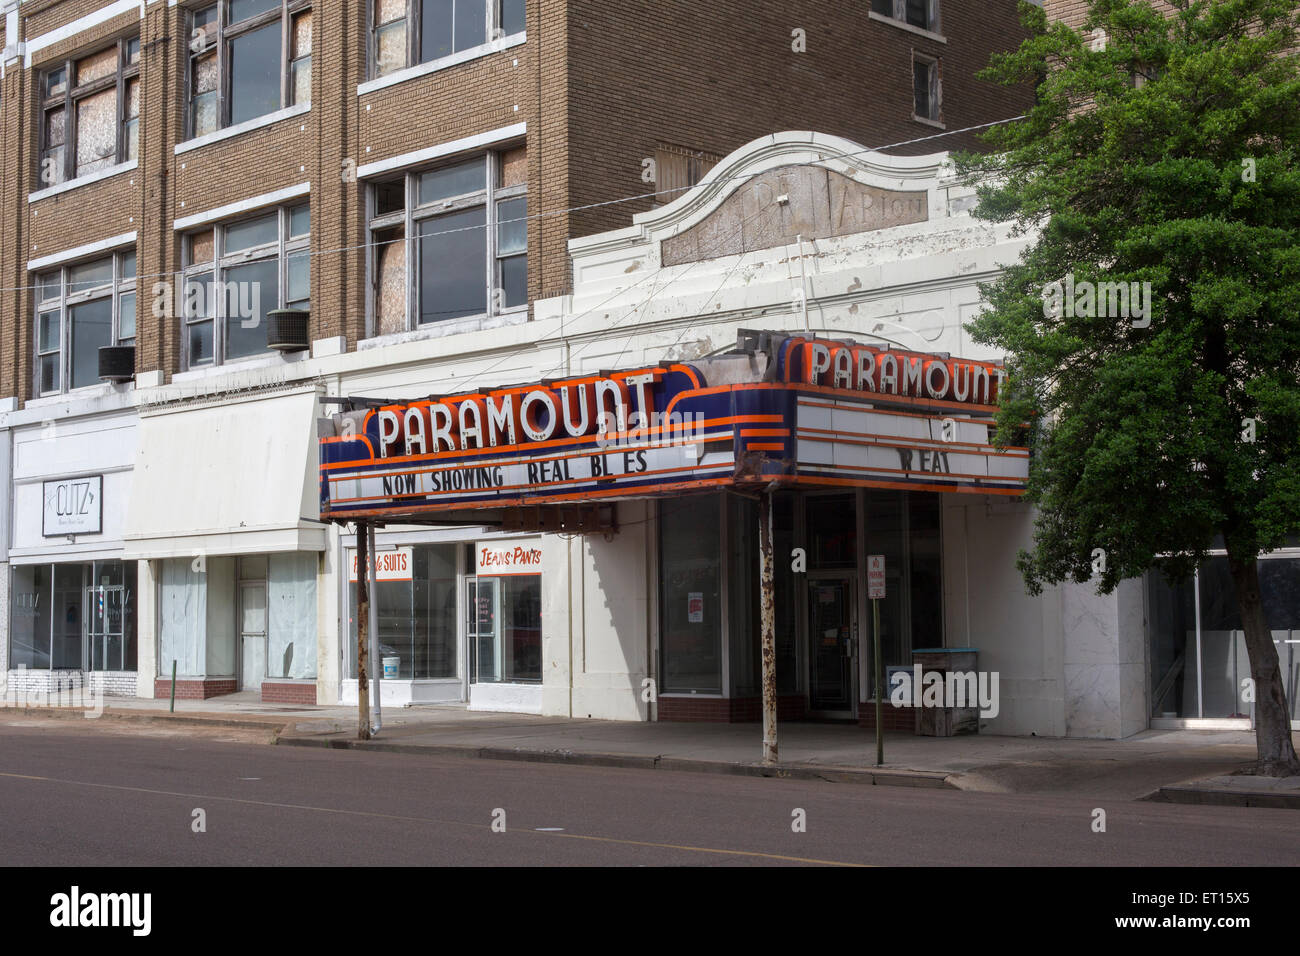 Clarksdale, Mississippi - edifici vuoti, incluso il Teatro Paramount, che ora mostra "Real Blues". Foto Stock